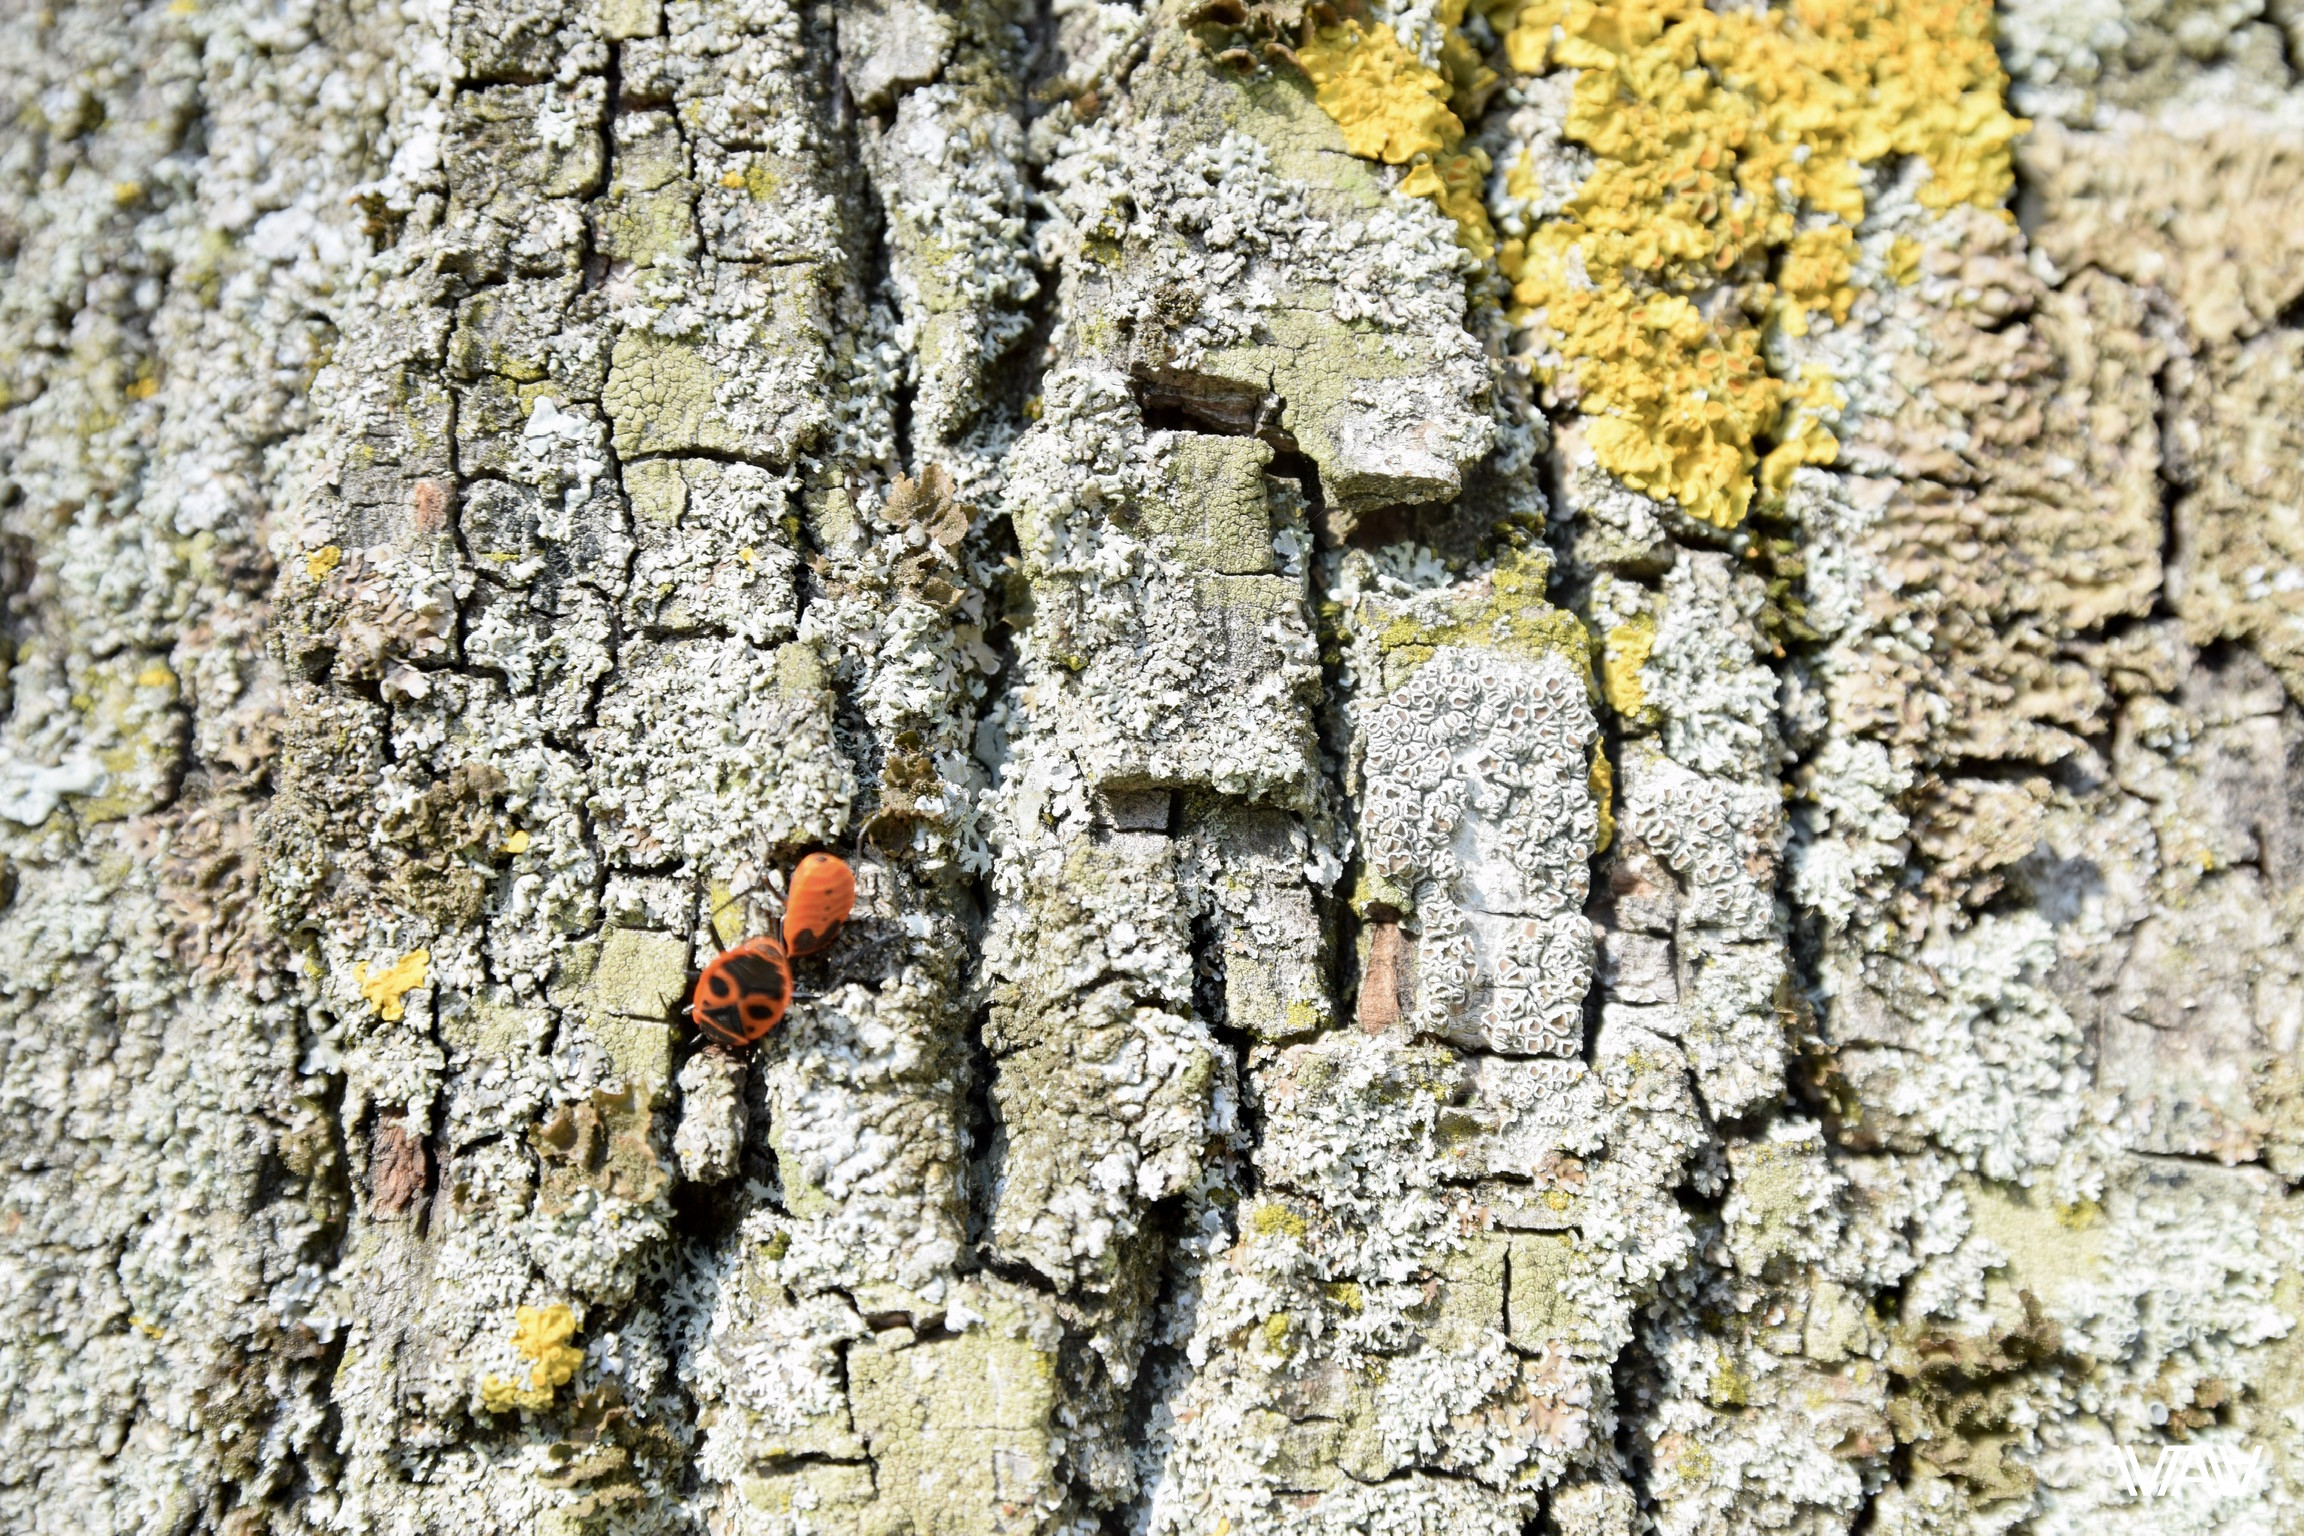 Природа не отстаёт и украшает собой деревья. Несвижский замок, Несвиж, Беларусь